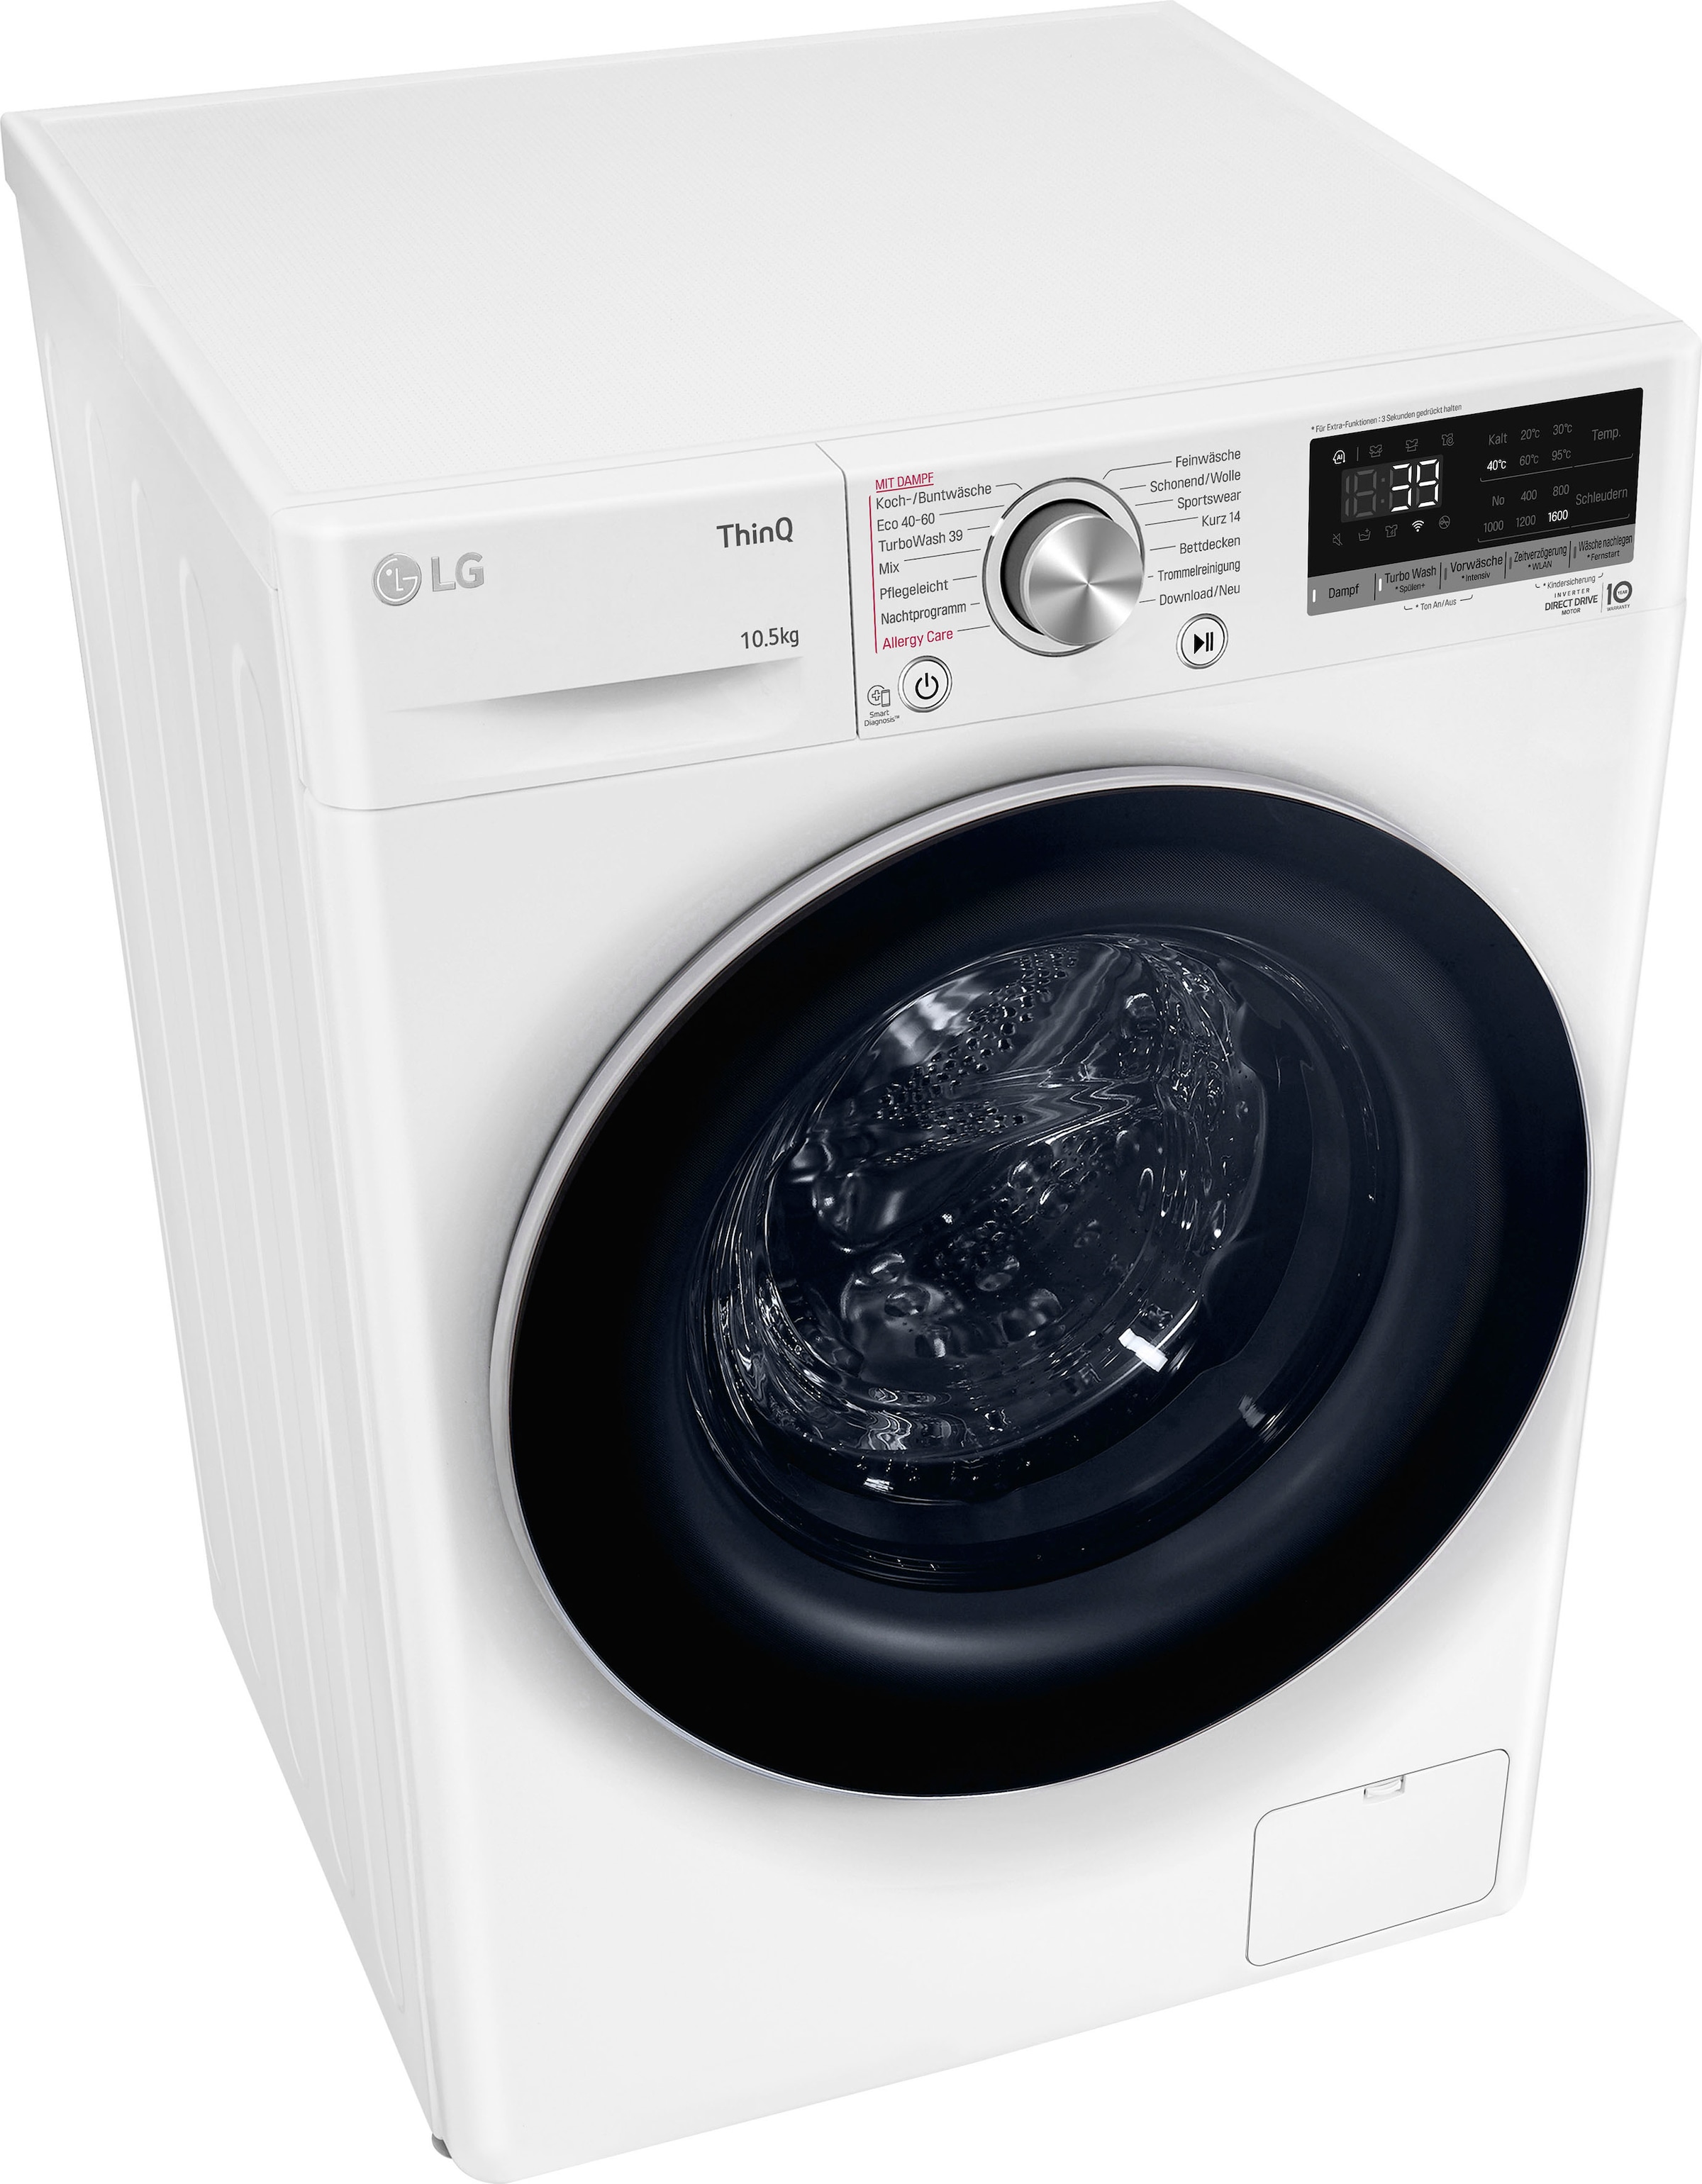 Jahren 3 Waschmaschine in XXL 1600 kg, 10,5 F6WV710P1, LG 39 Garantie Minuten »F6WV710P1«, - U/min, Waschen nur TurboWash® mit